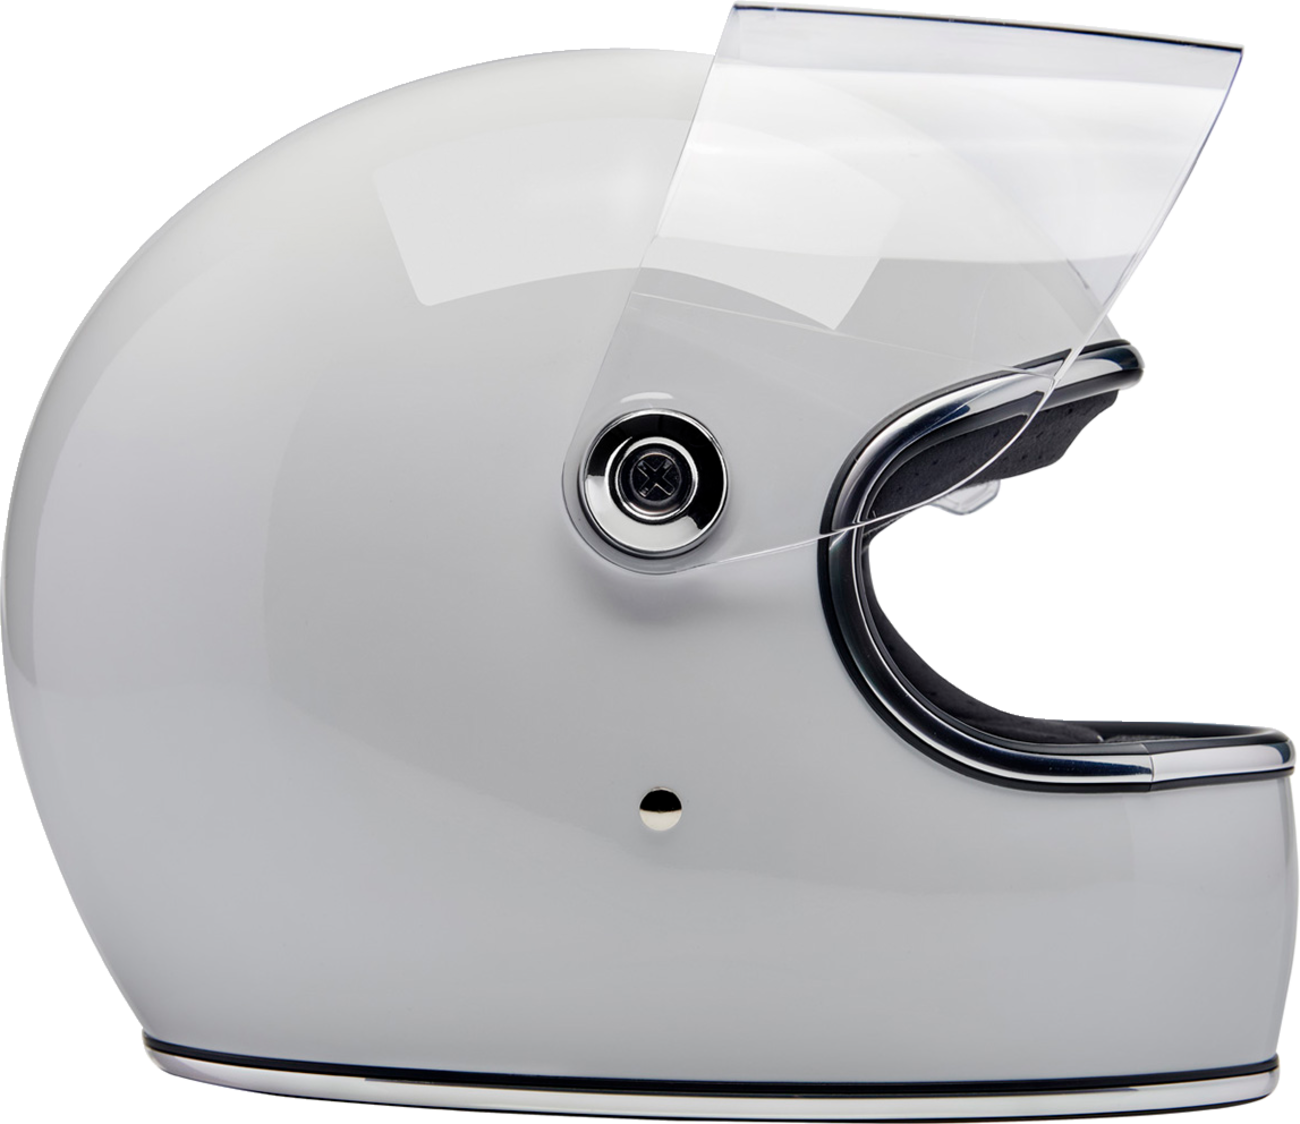 BILTWELL Gringo S Helmet - Gloss White - Large 1003-102-504